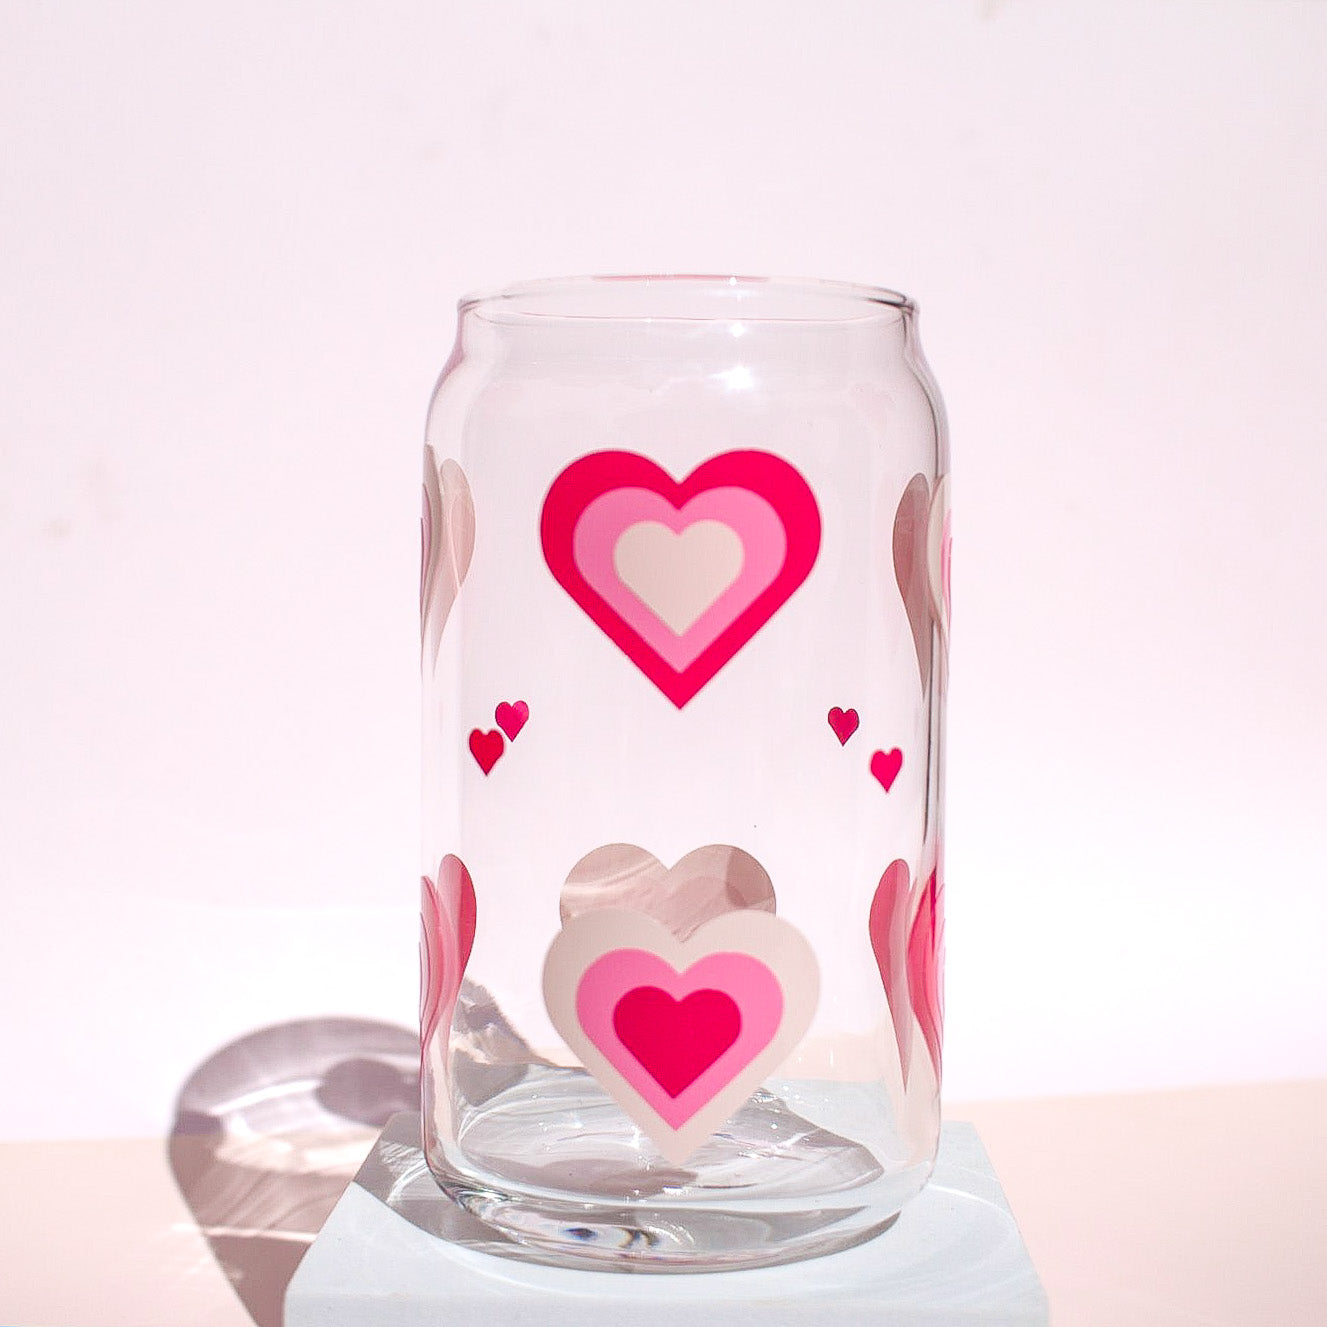 Retro Hearts Glass Cup